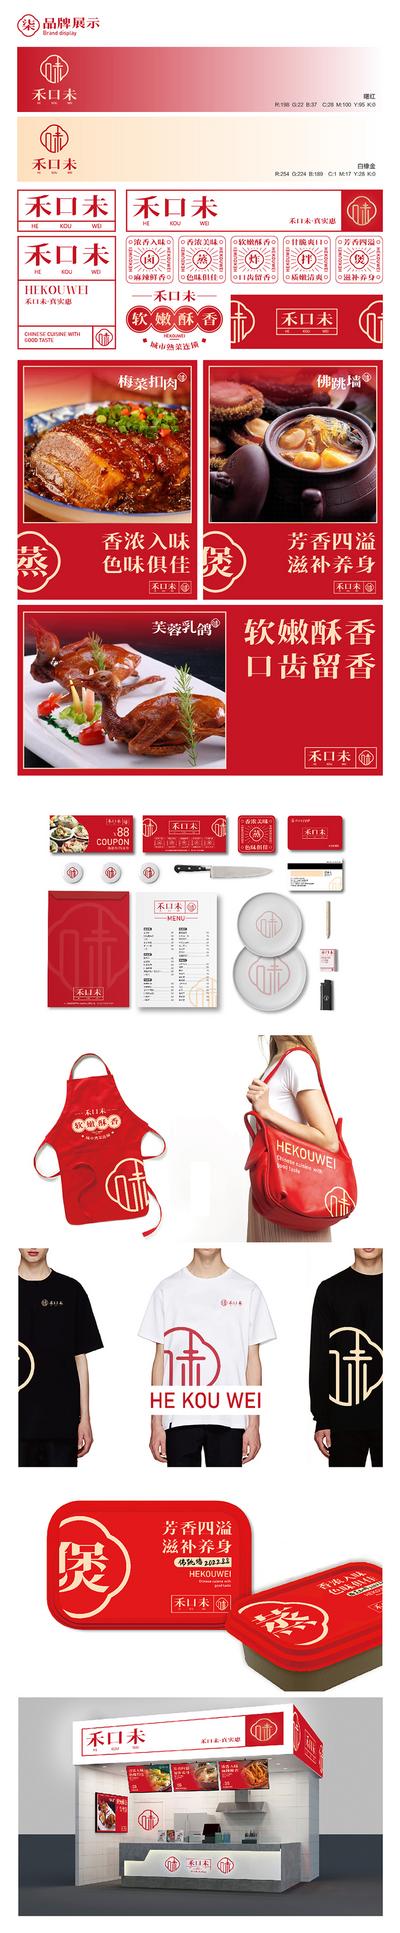 南门网 提案 提报 餐饮 logo设计 物料 名片 包装盒 手提袋